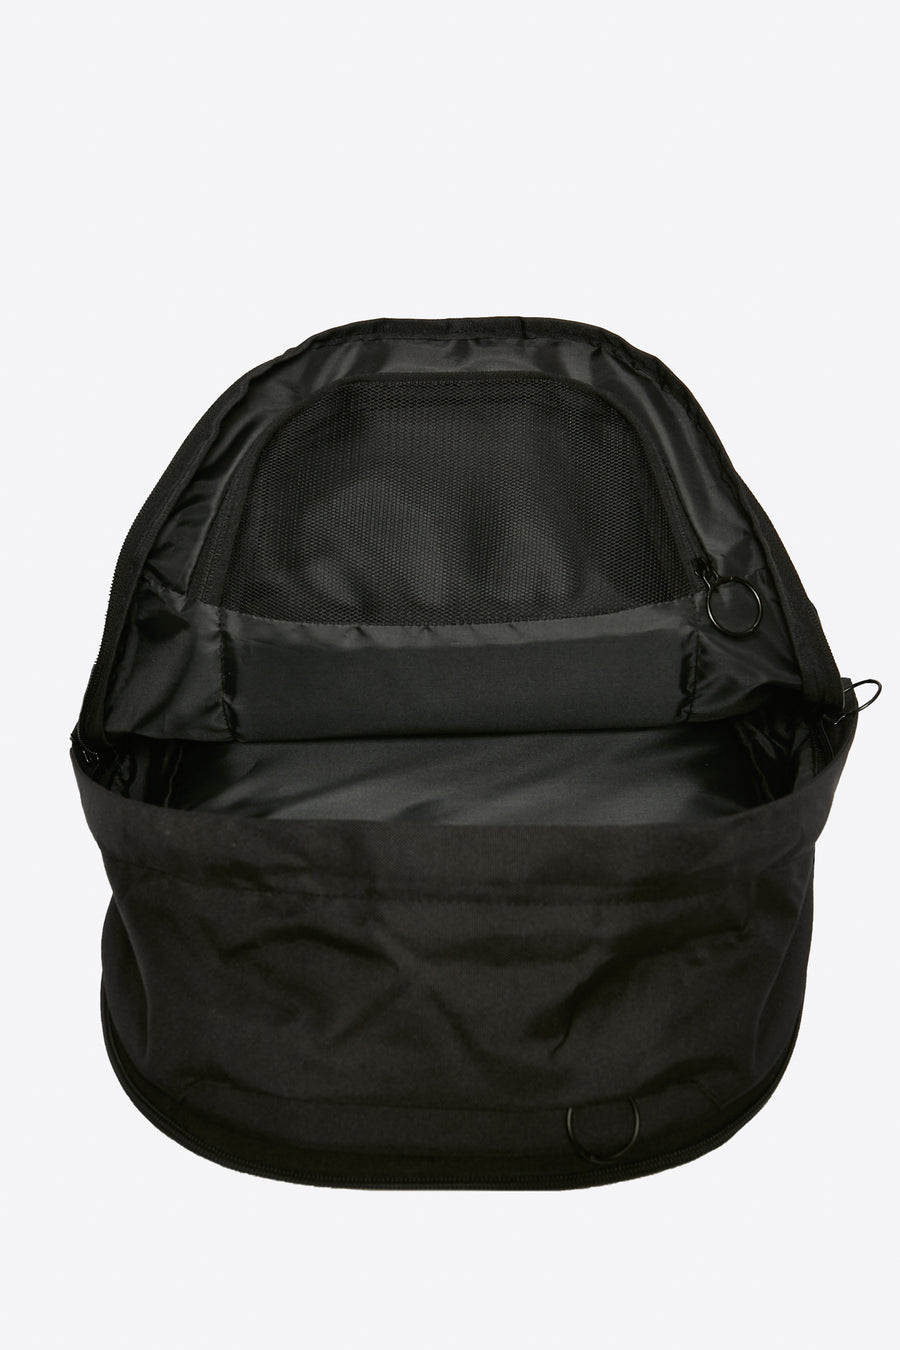 Wunstorf Backpack - Stealth Black